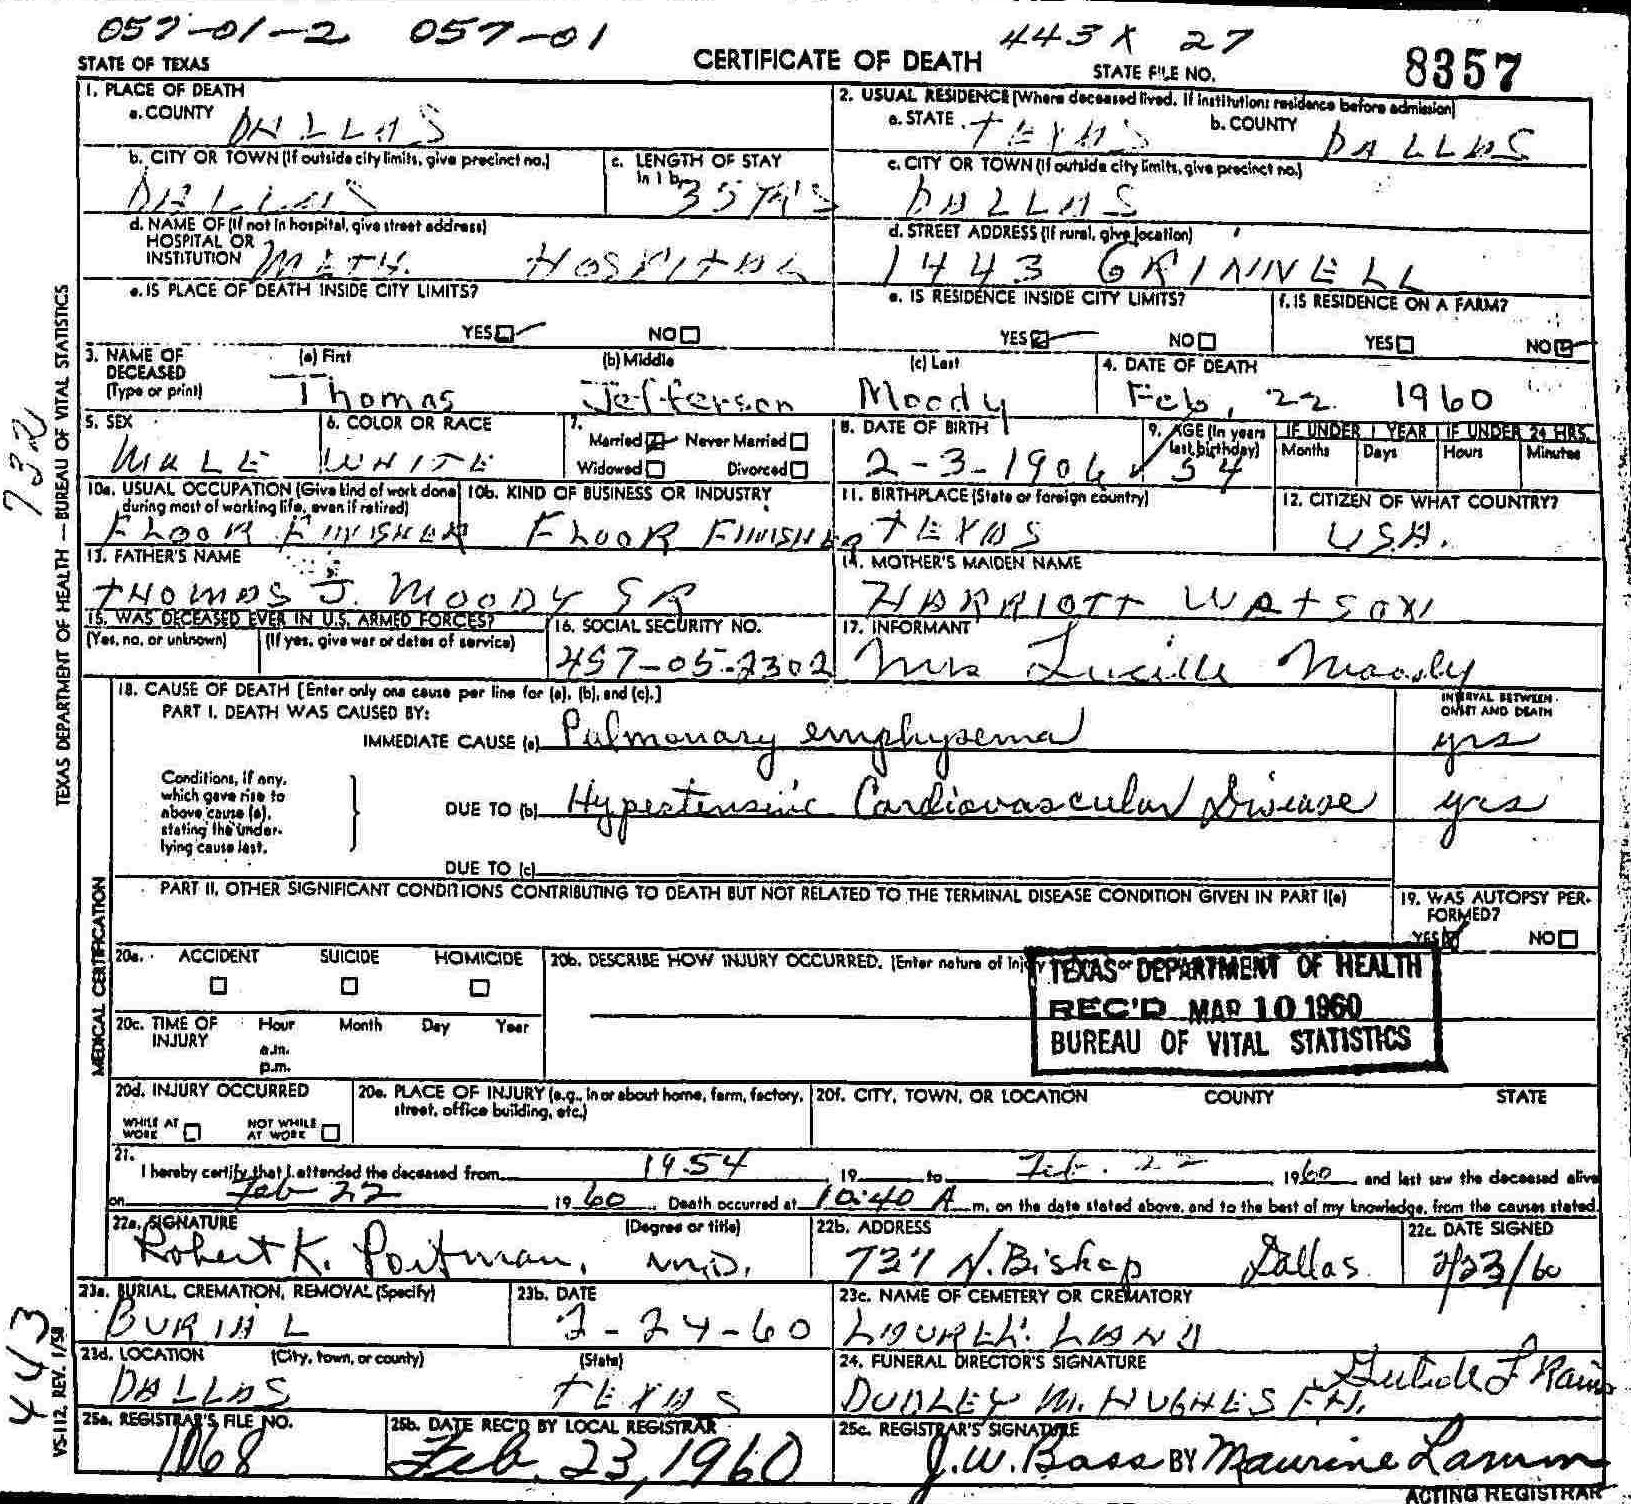 T J Moody, Jr. Death Certificate